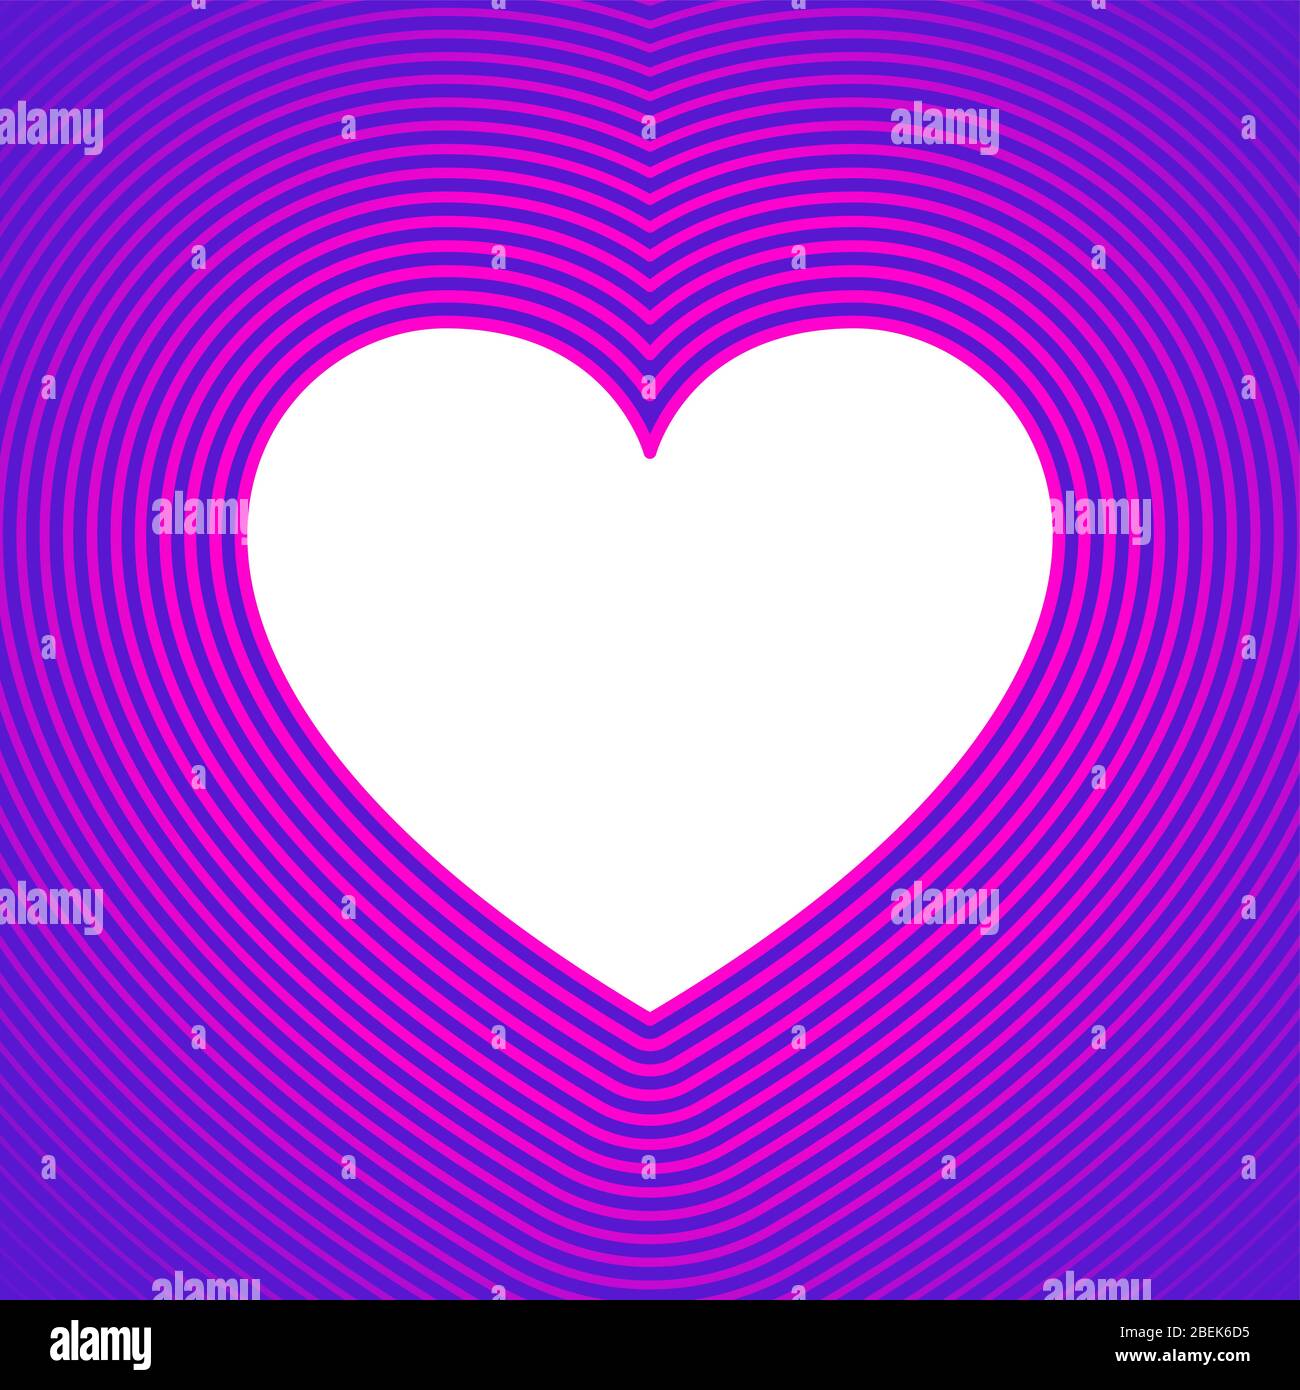 Símbolo de corazón blanco con líneas de desplazamiento rosas sobre fondo morado.plantilla para utilizar como fondo o como tarjeta de felicitación. Forma del corazón para expresar la emoción Foto de stock